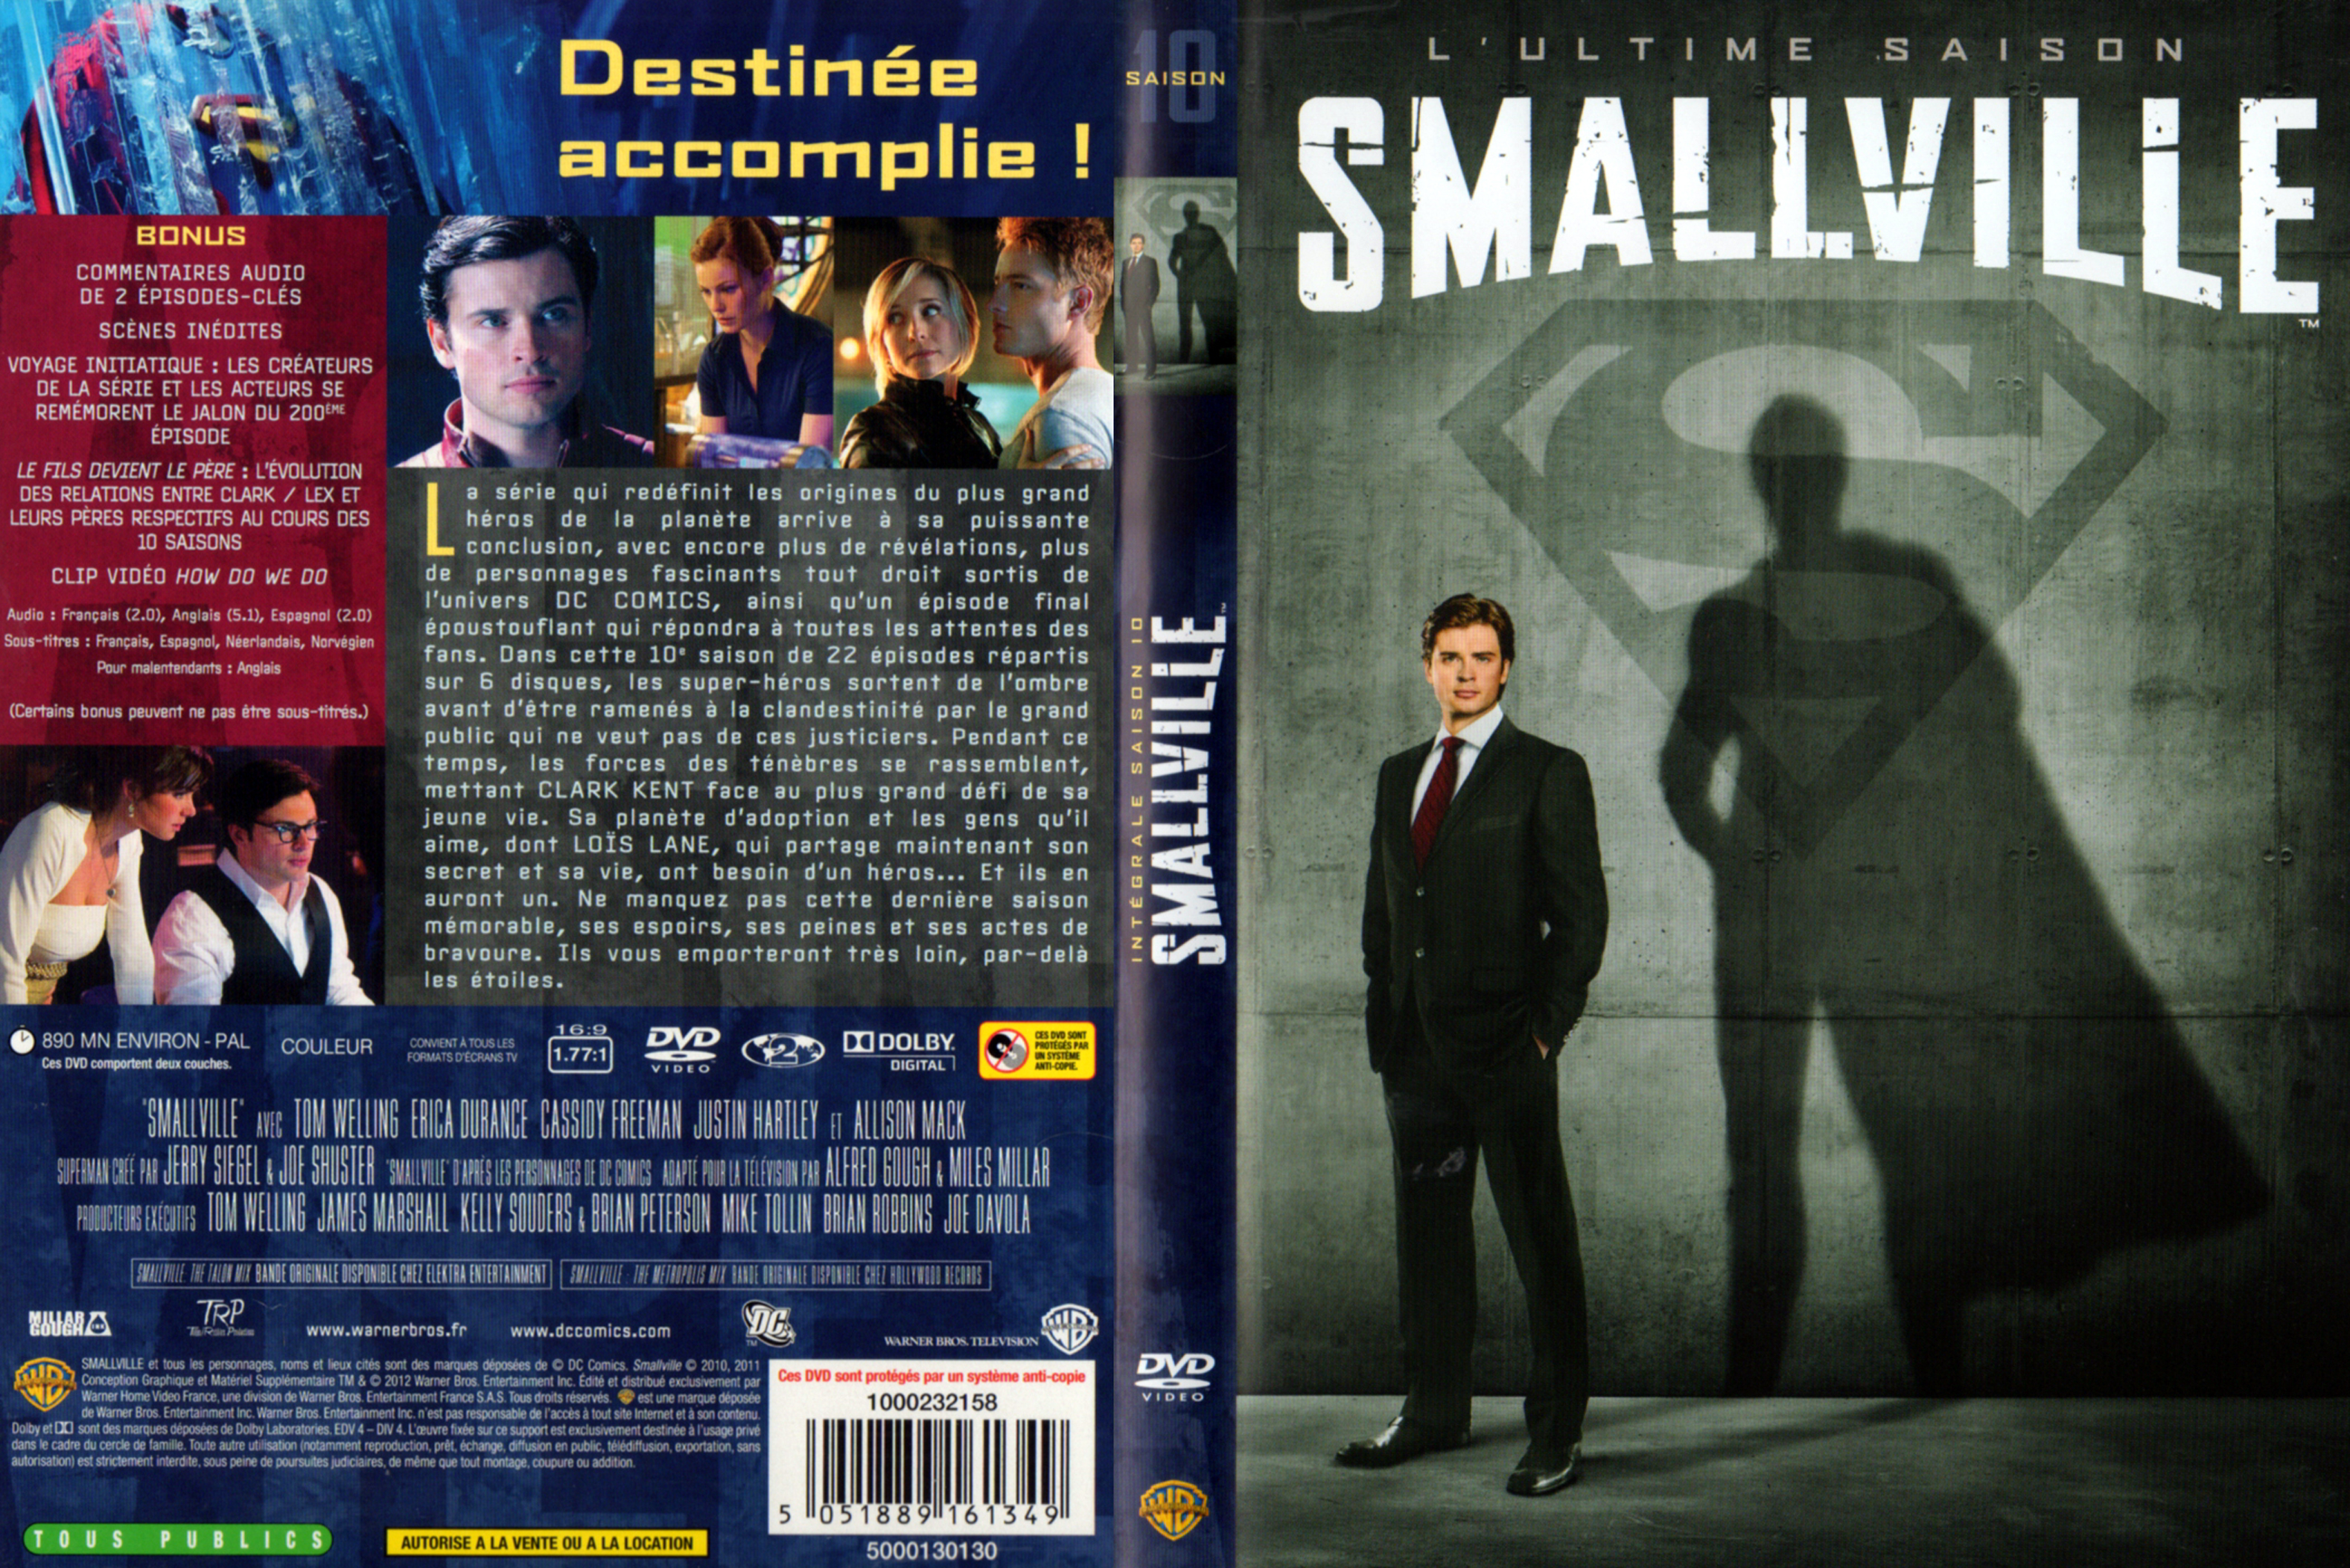 Jaquette DVD Smallville saison 10 COFFRET